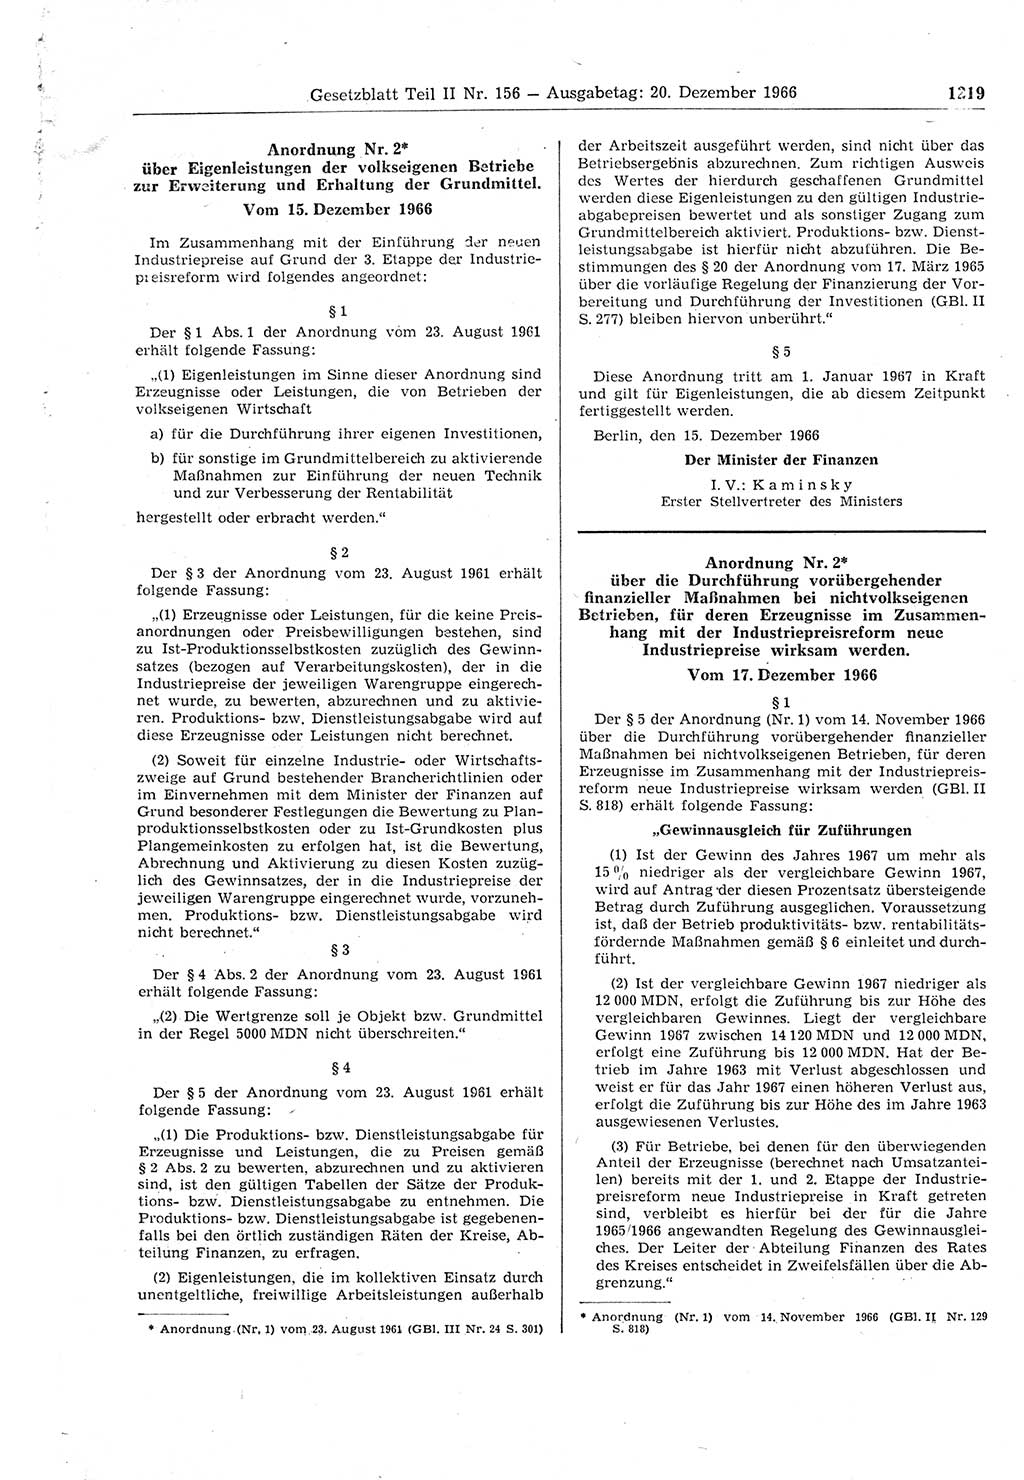 Gesetzblatt (GBl.) der Deutschen Demokratischen Republik (DDR) Teil ⅠⅠ 1966, Seite 1219 (GBl. DDR ⅠⅠ 1966, S. 1219)